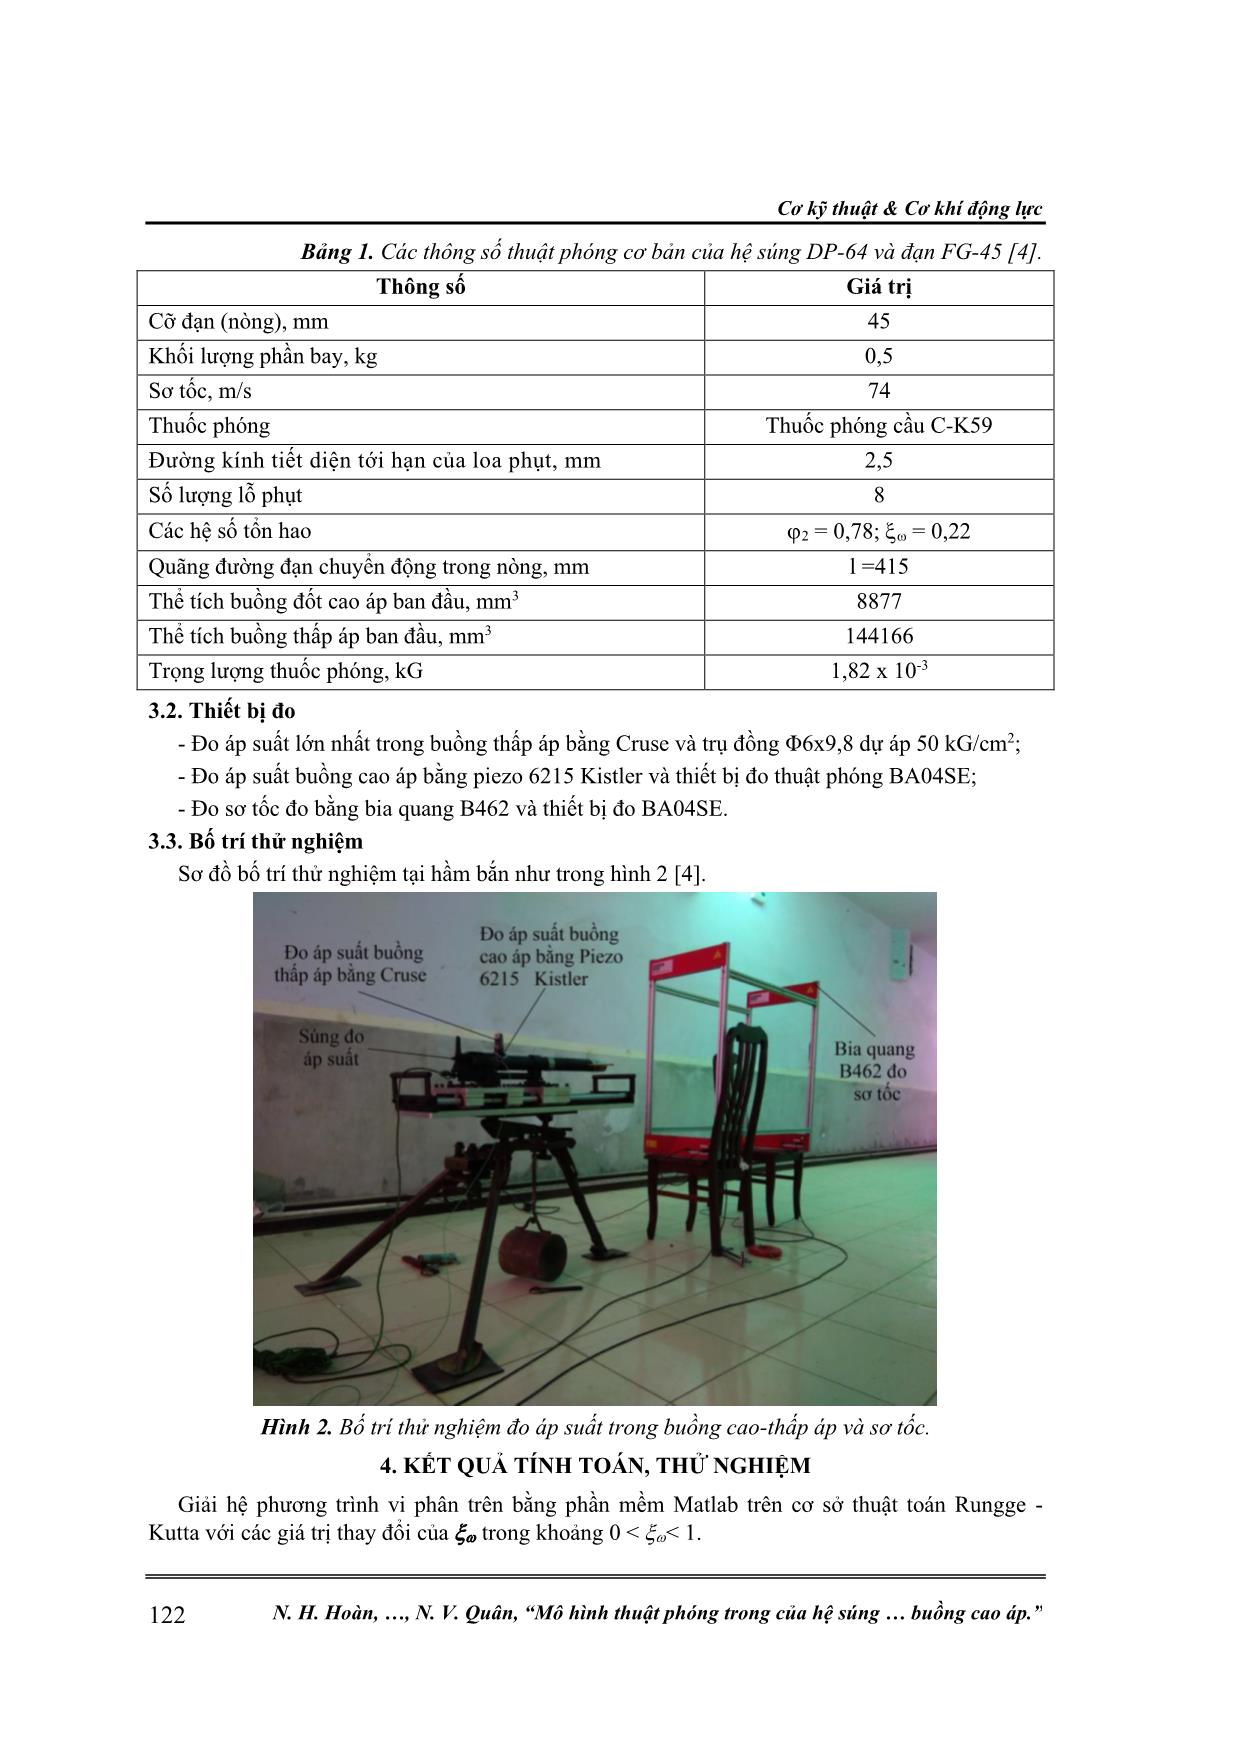 Mô hình thuật phóng trong của hệ súng phóng lựu có tính đến thuốc phóng cháy không hoàn toàn trong buồng cao áp trang 4